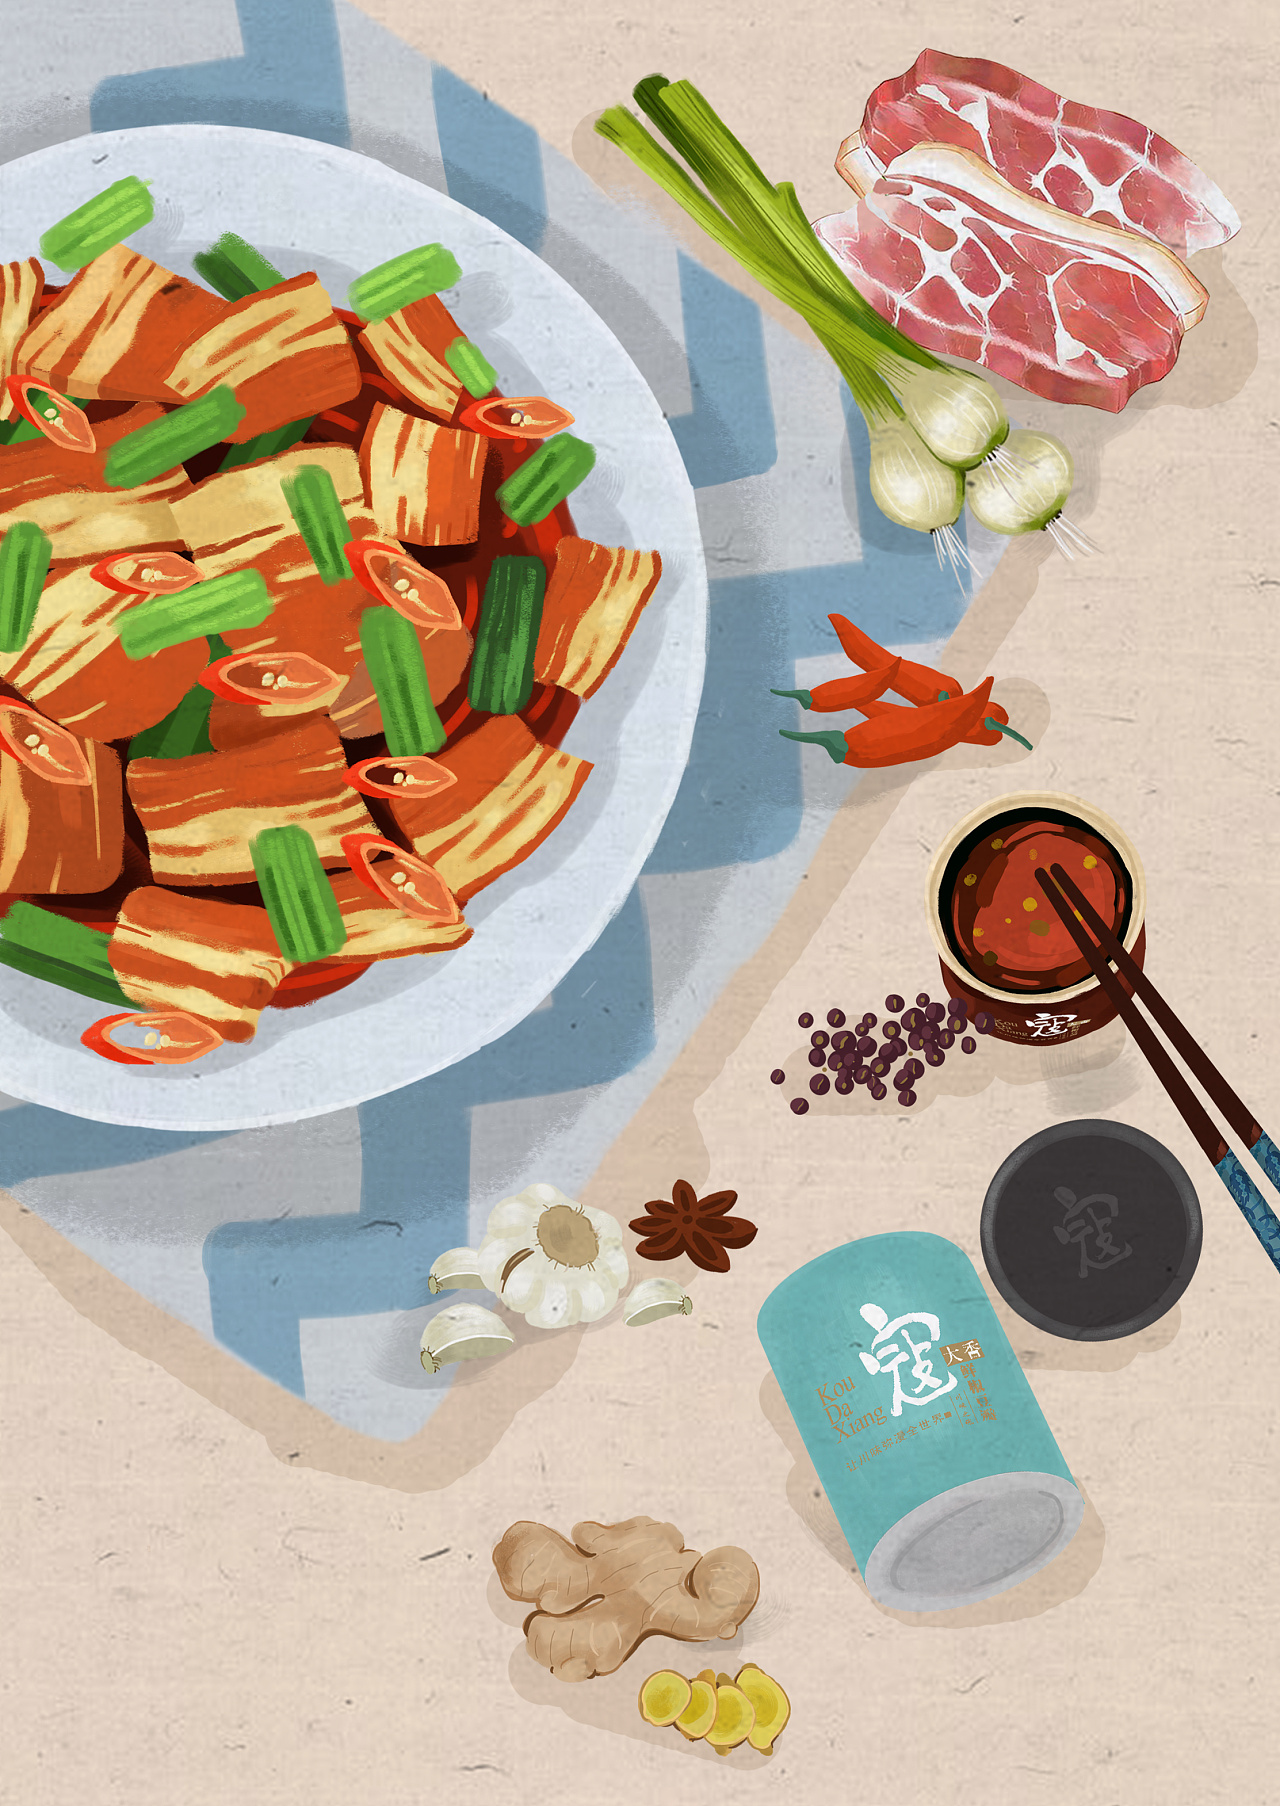 HAND-PAINTED: Sichuan Cuisine 川菜 chuān cài : chinesefood